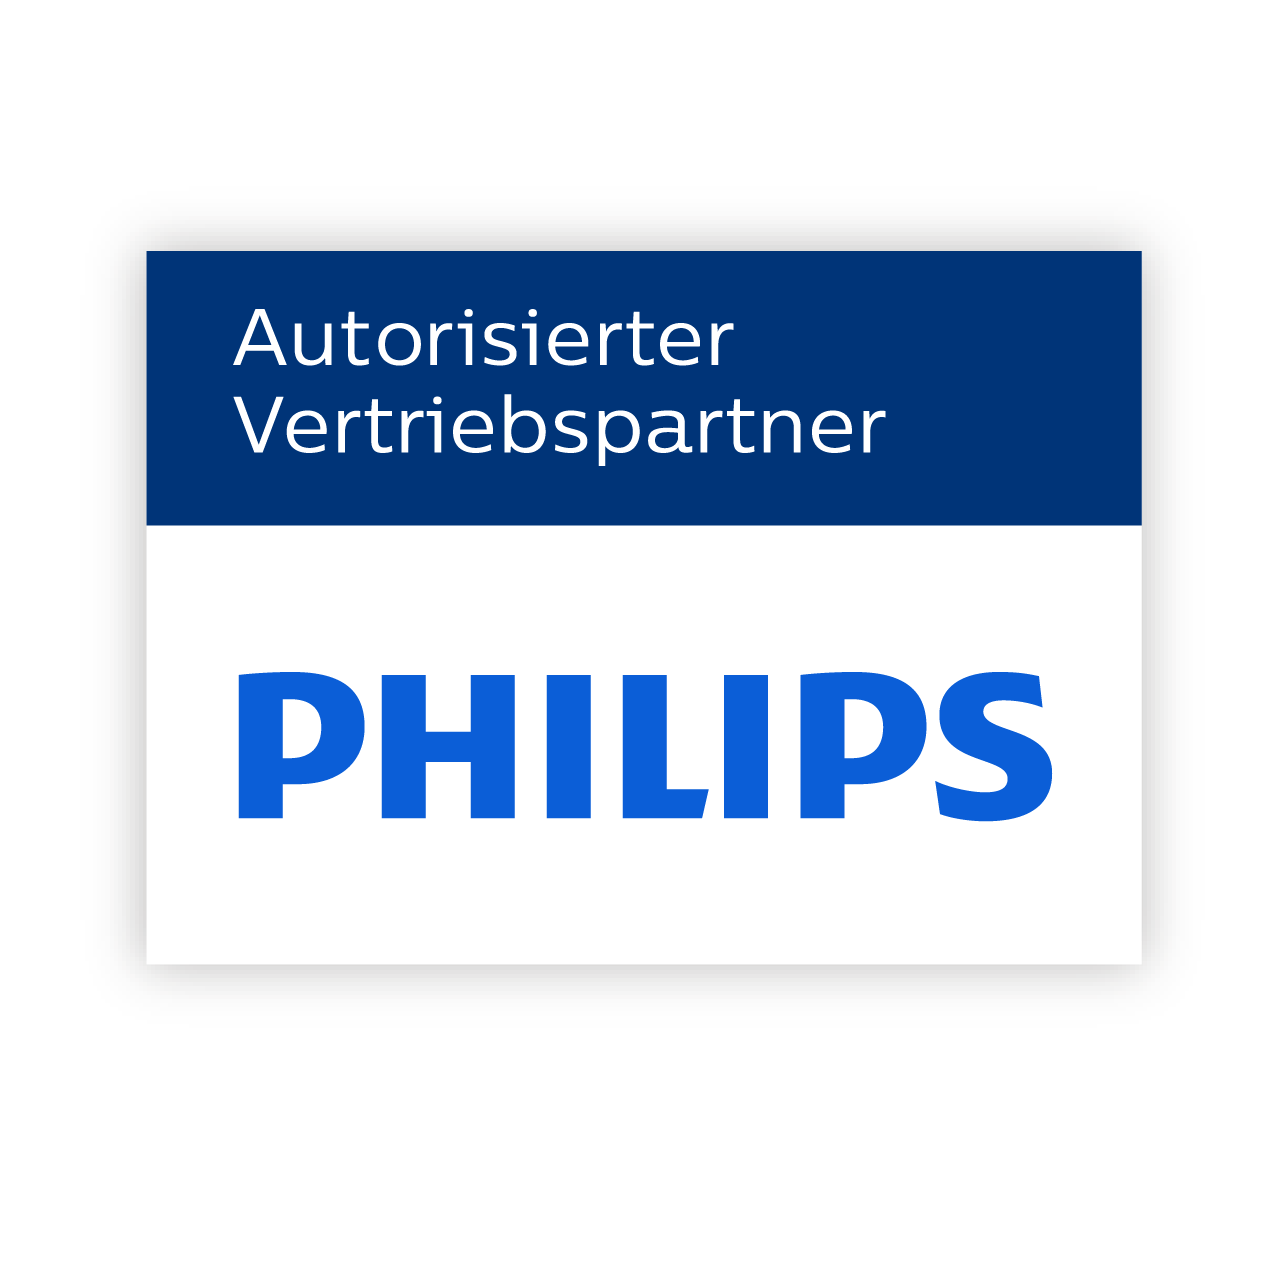 Philips - Hochqualitativer Hersteller von Gesundheitstechnologie und Haushaltsgeräten - Erleben Sie die ganze Vielfalt